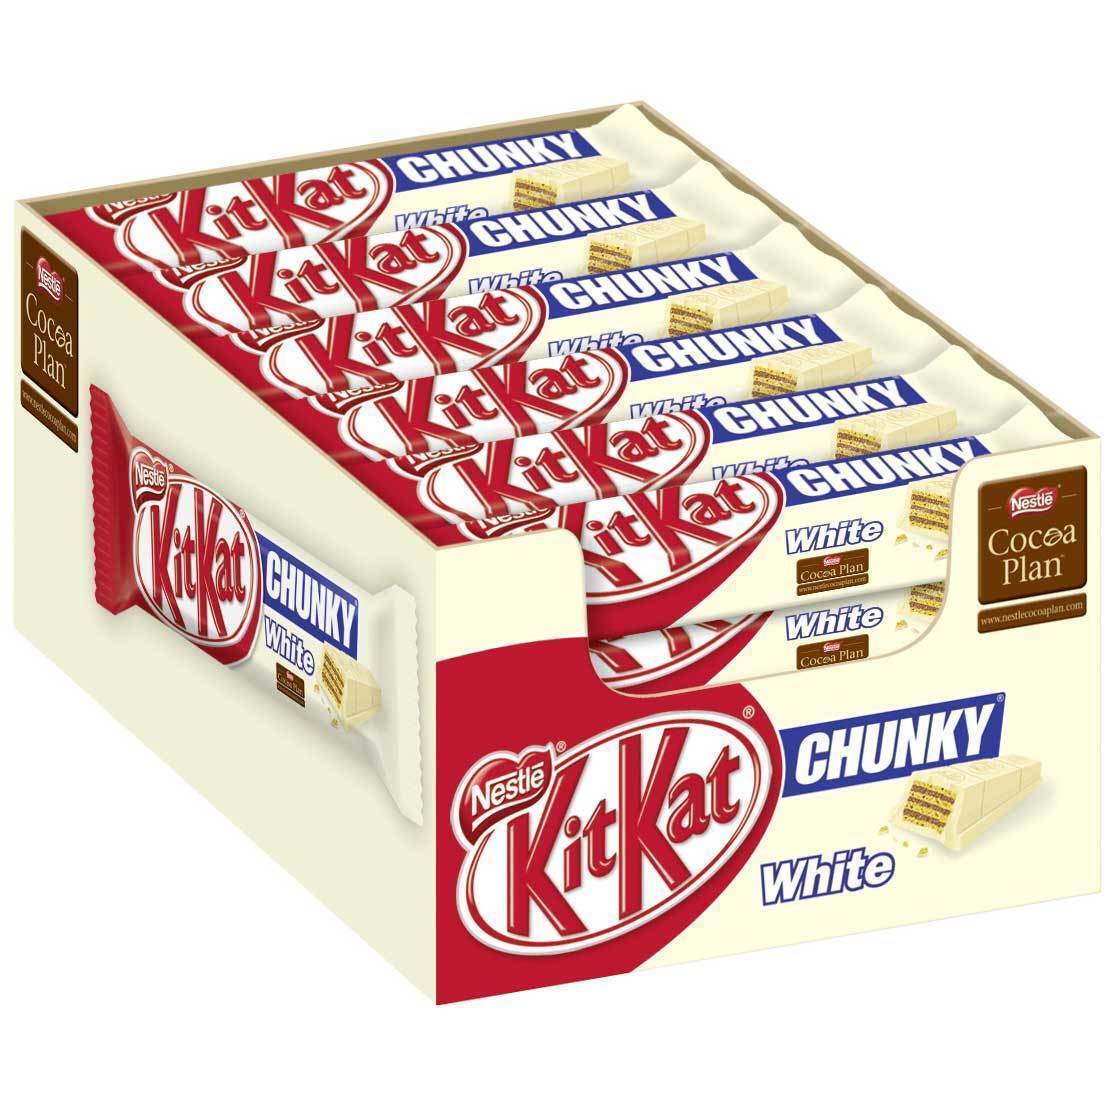 Un paquet en carton rouge et couleur crème, il est rempli d’emballage avec une barre chocolaté enrobée de chocolat blanc. Le tout sur fond blanc